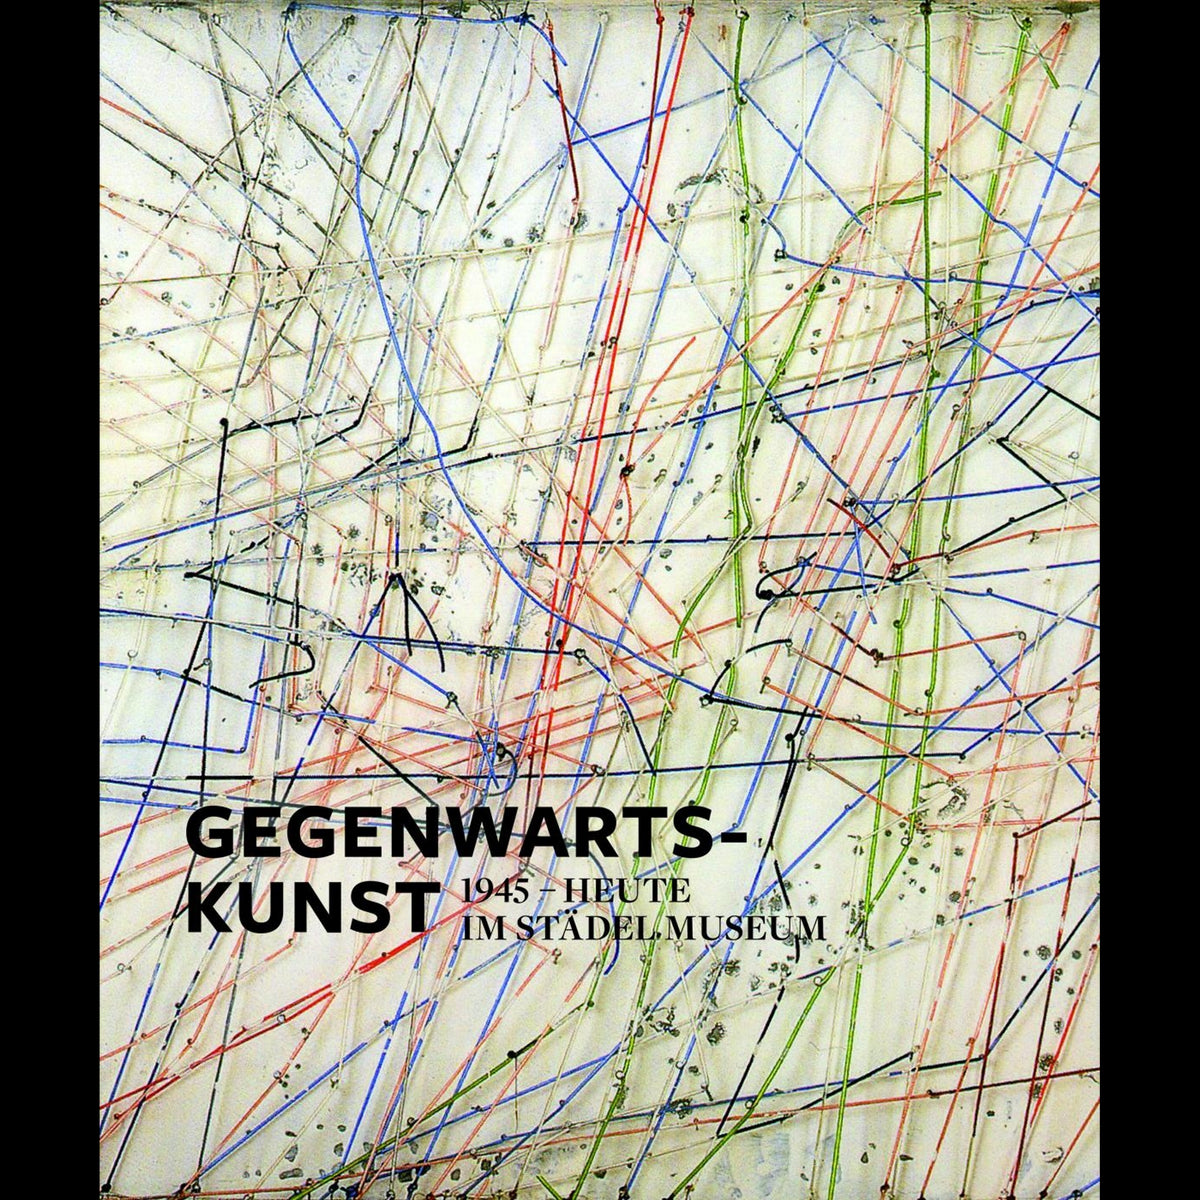 Coverbild Gegenwartskunst (1945-heute) im Städel Museum